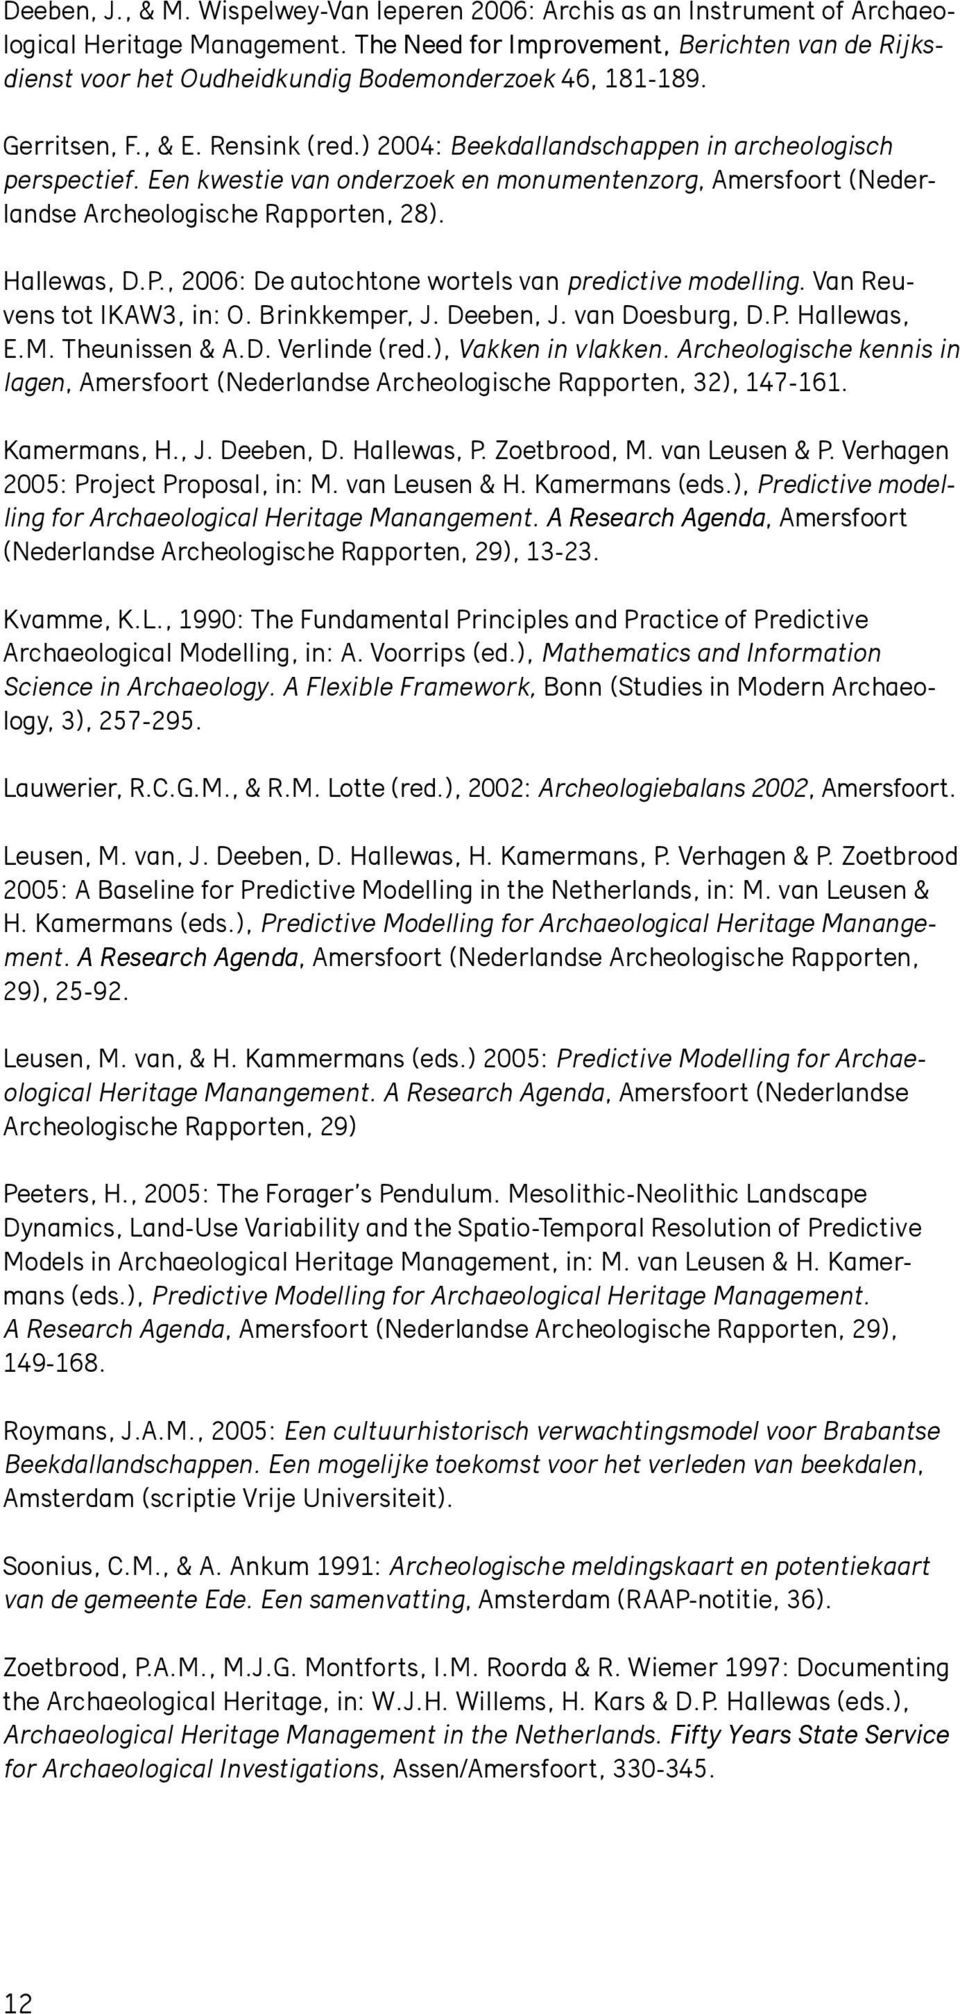 Een kwestie van onderzoek en monumentenzorg, Amersfoort (Nederlandse Archeologische Rapporten, 28). Hallewas, D.P., 2006: De autochtone wortels van predictive modelling. Van Reuvens tot IKAW3, in: O.